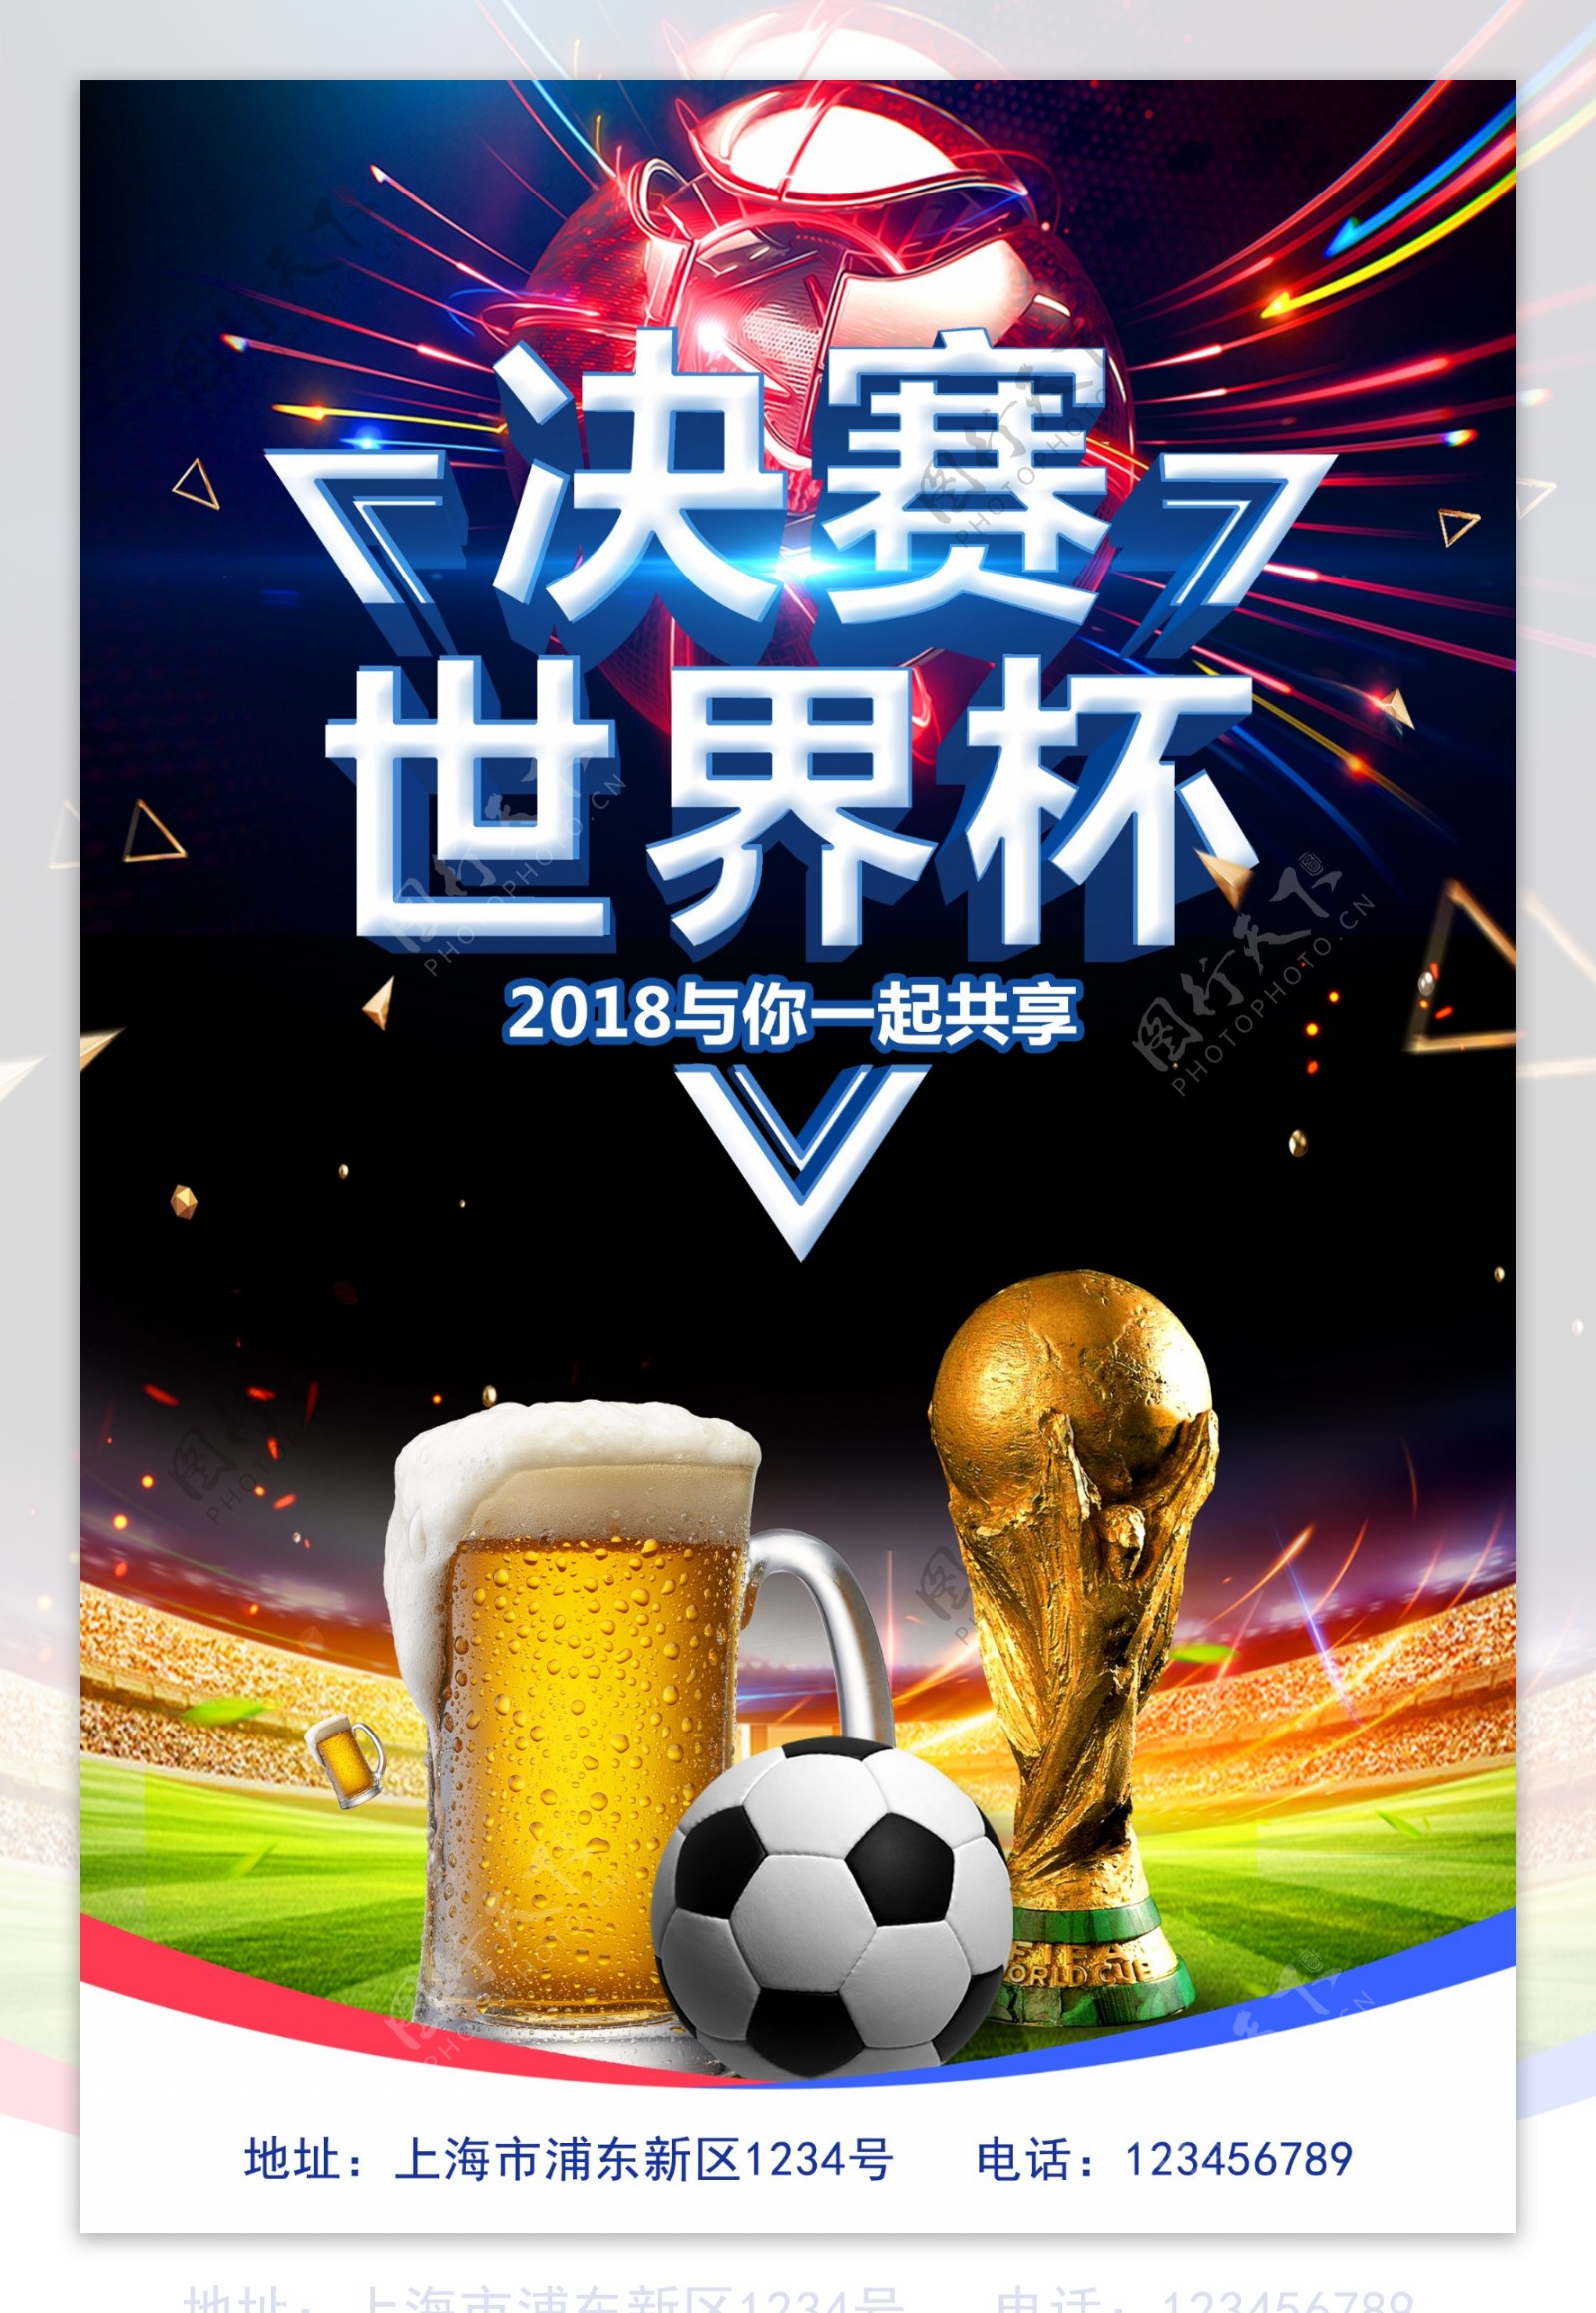 世界杯决赛海报设计